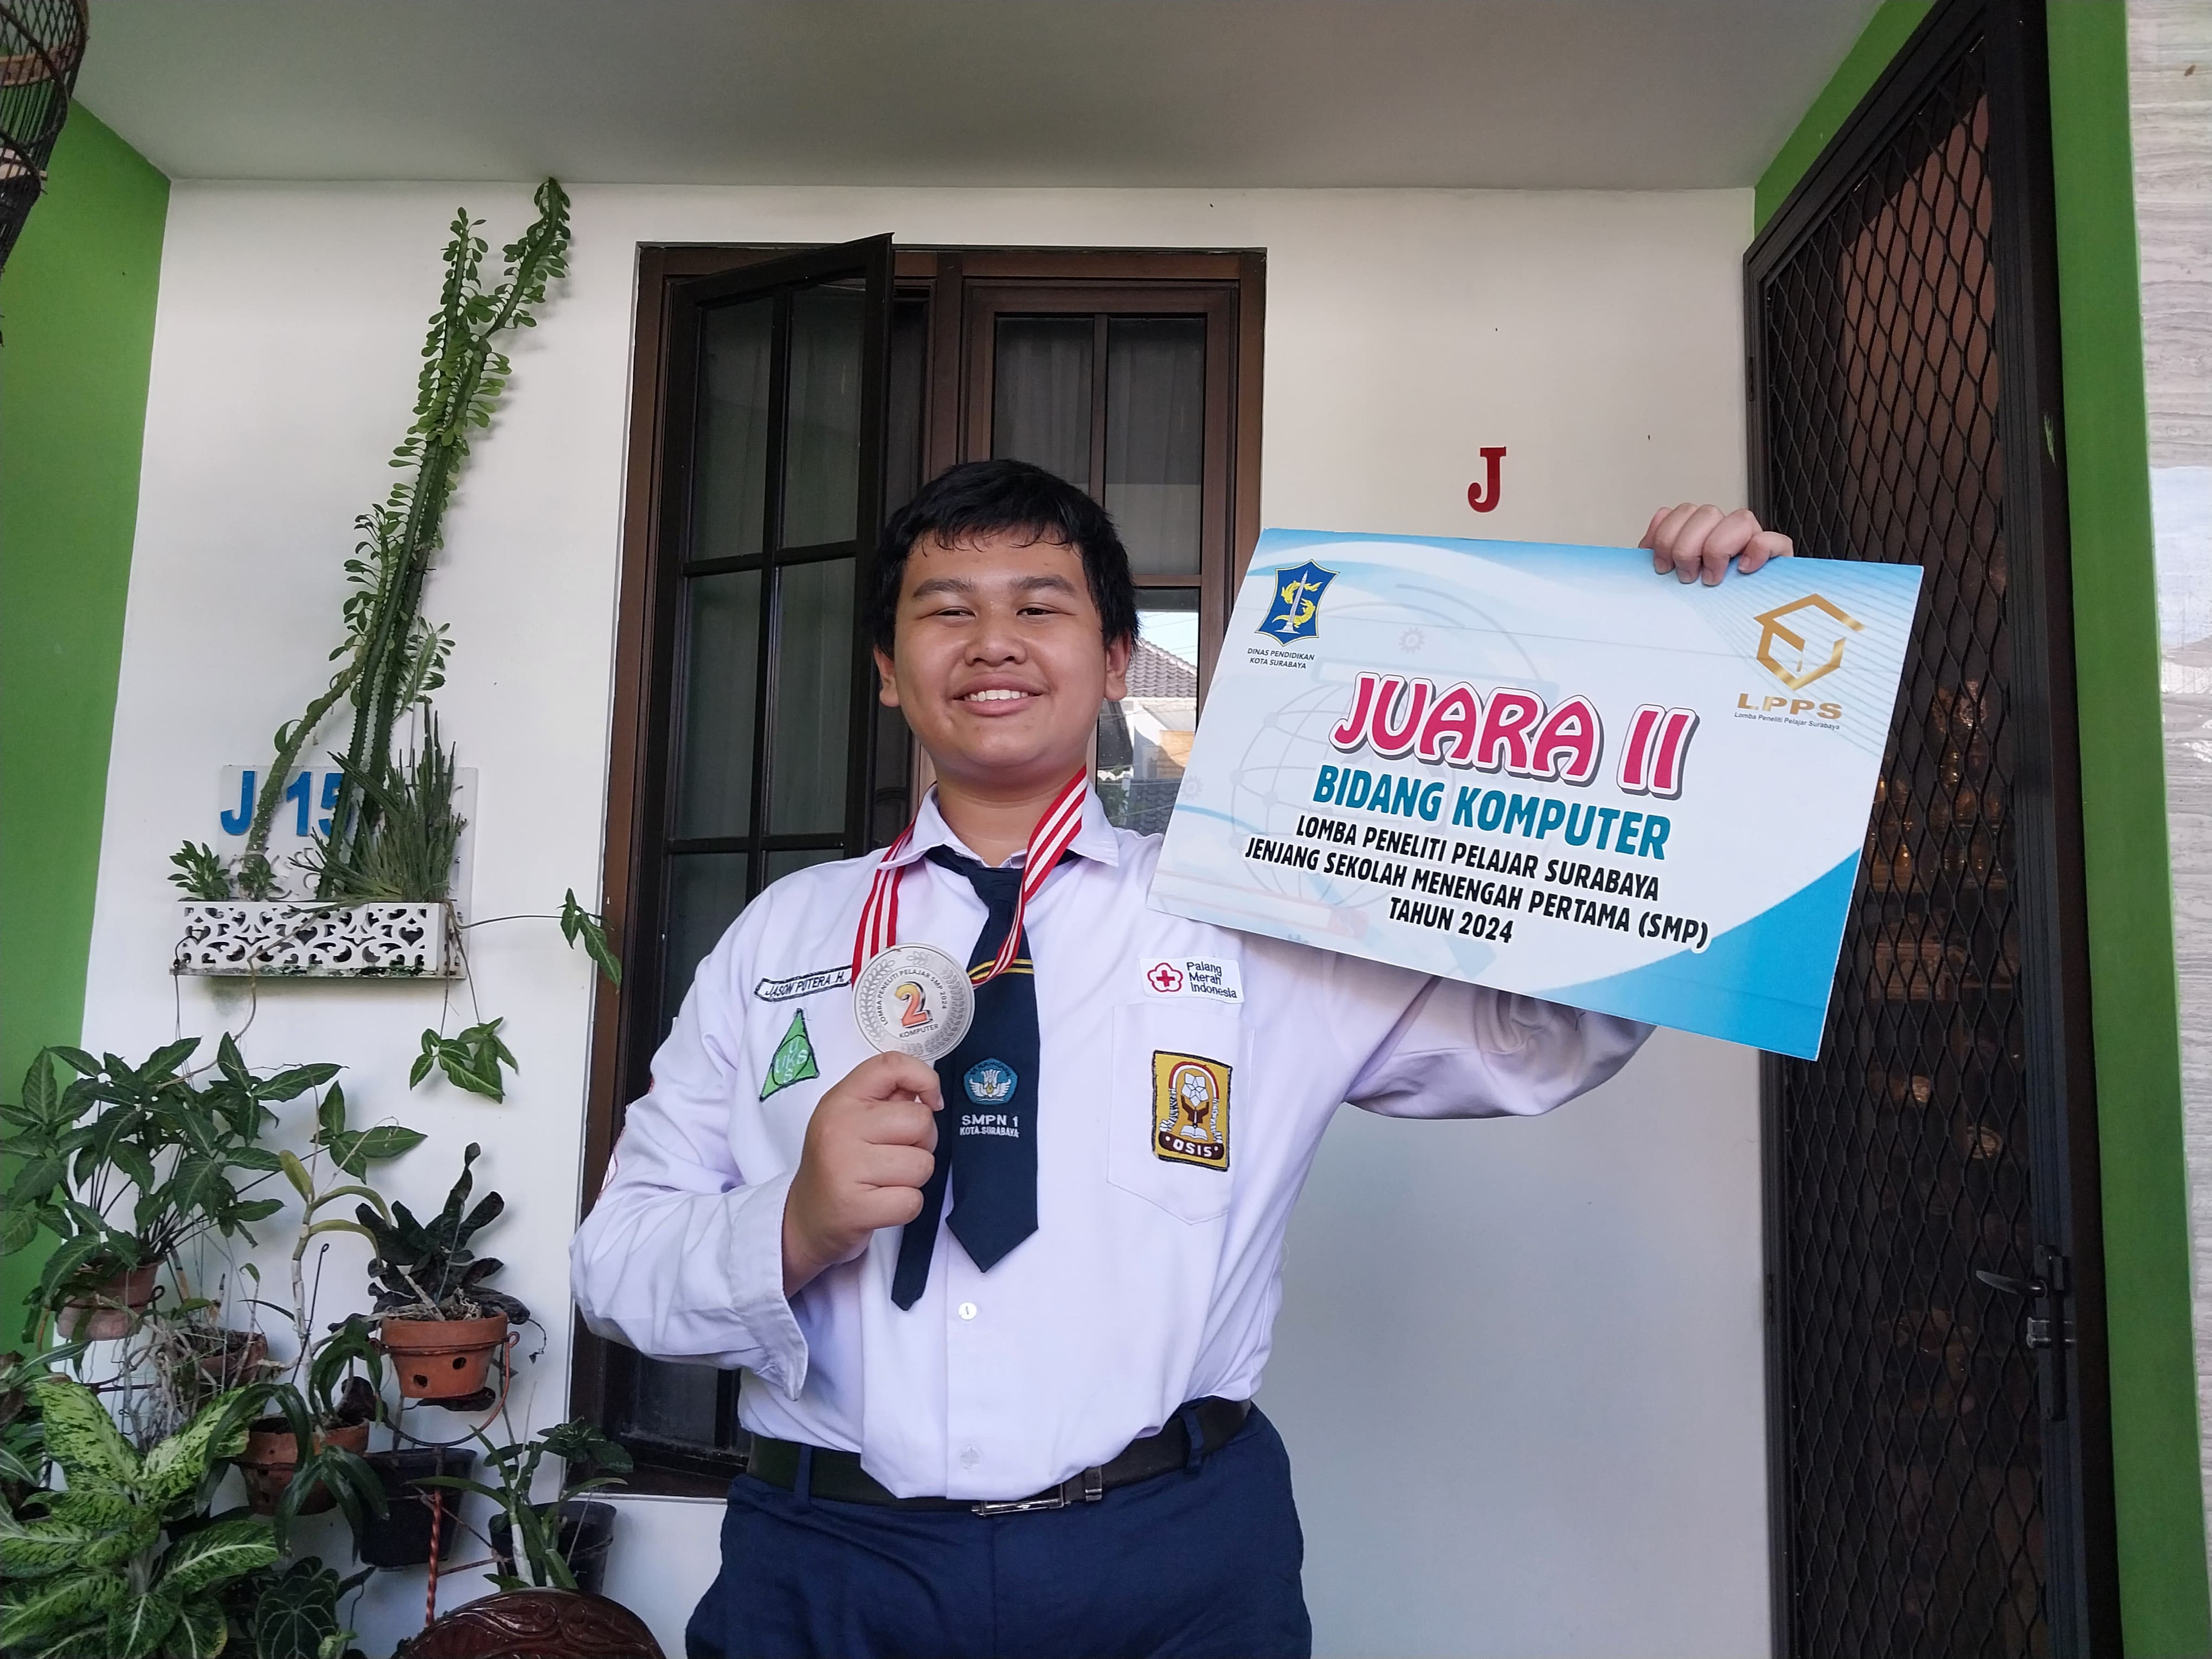 Siswa SMPN 1 Surabaya Raih Prestasi dengan Tongkat Tuna Netra Ciptaannya